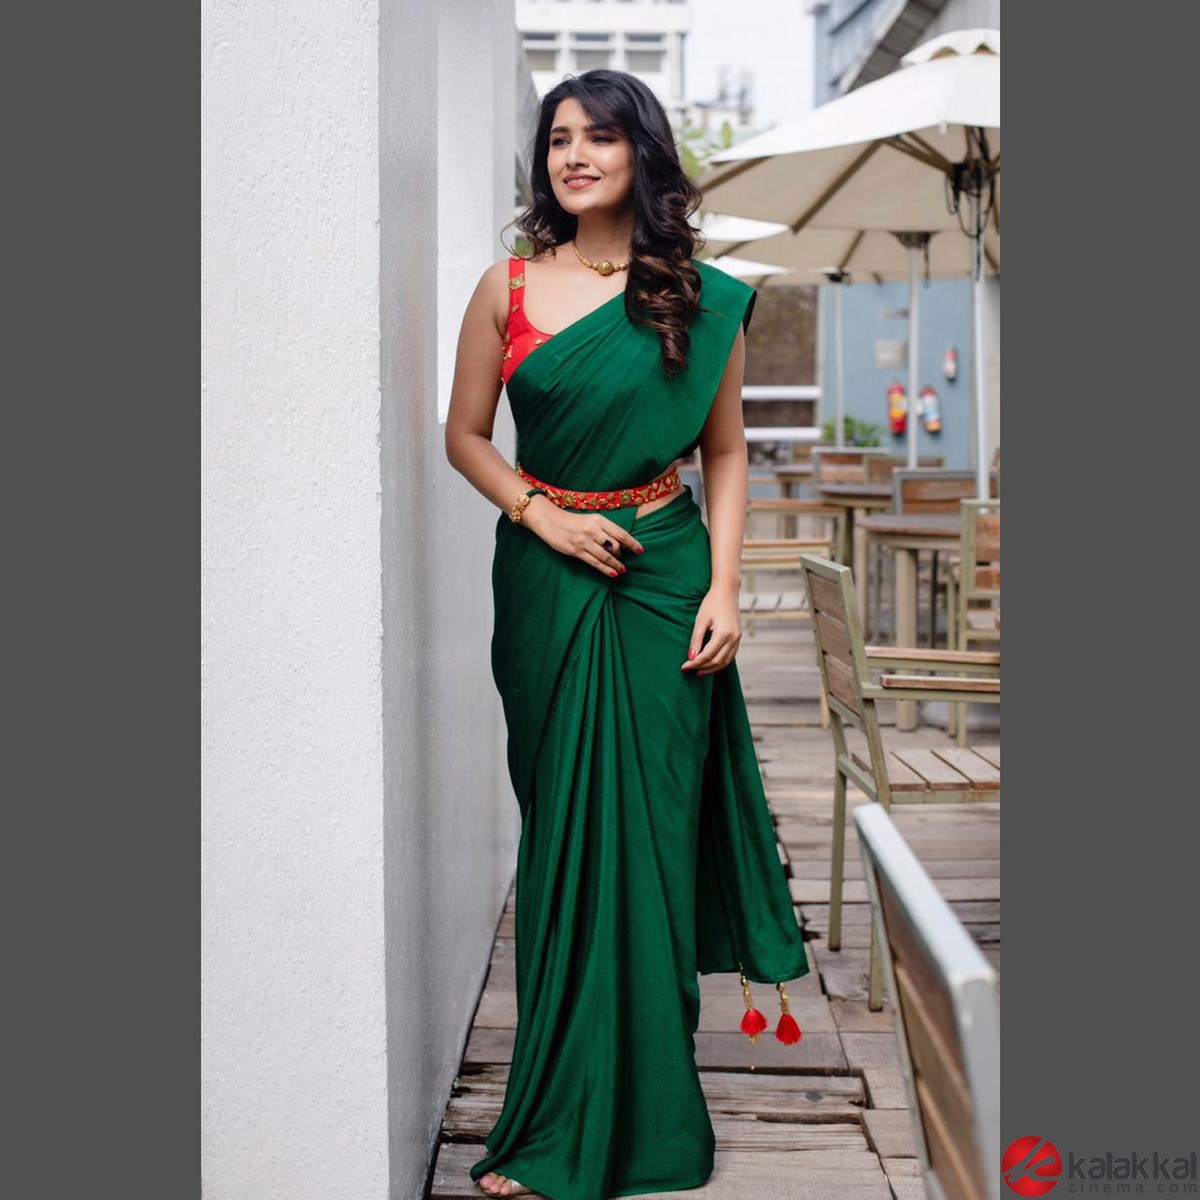 Actress Vani Bhojan Latest Stills